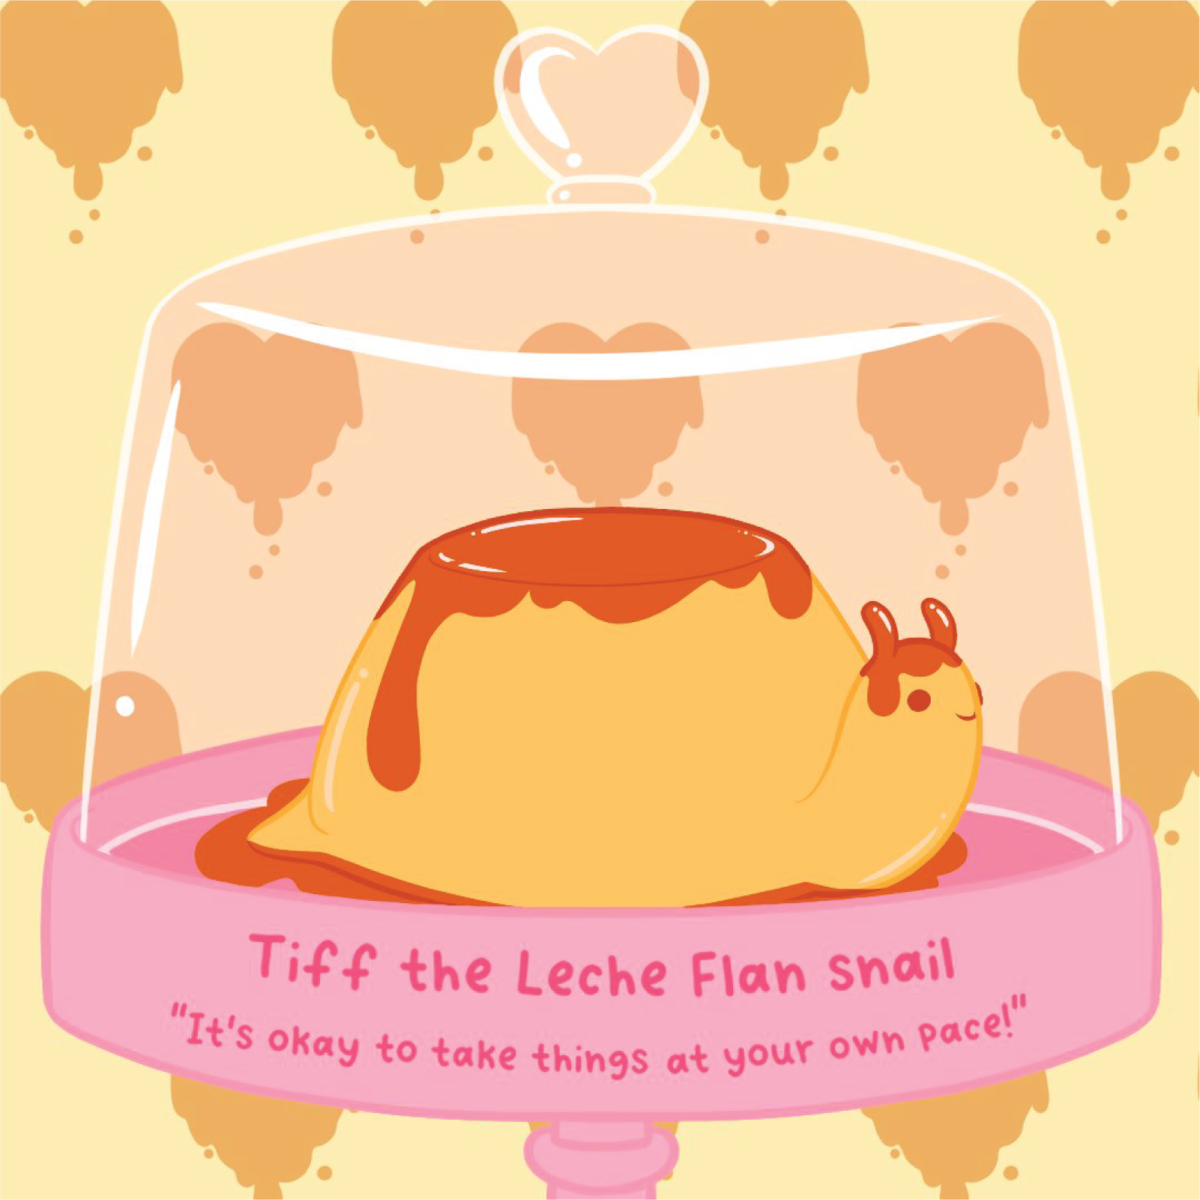 Tiff the Leche Flan Snail